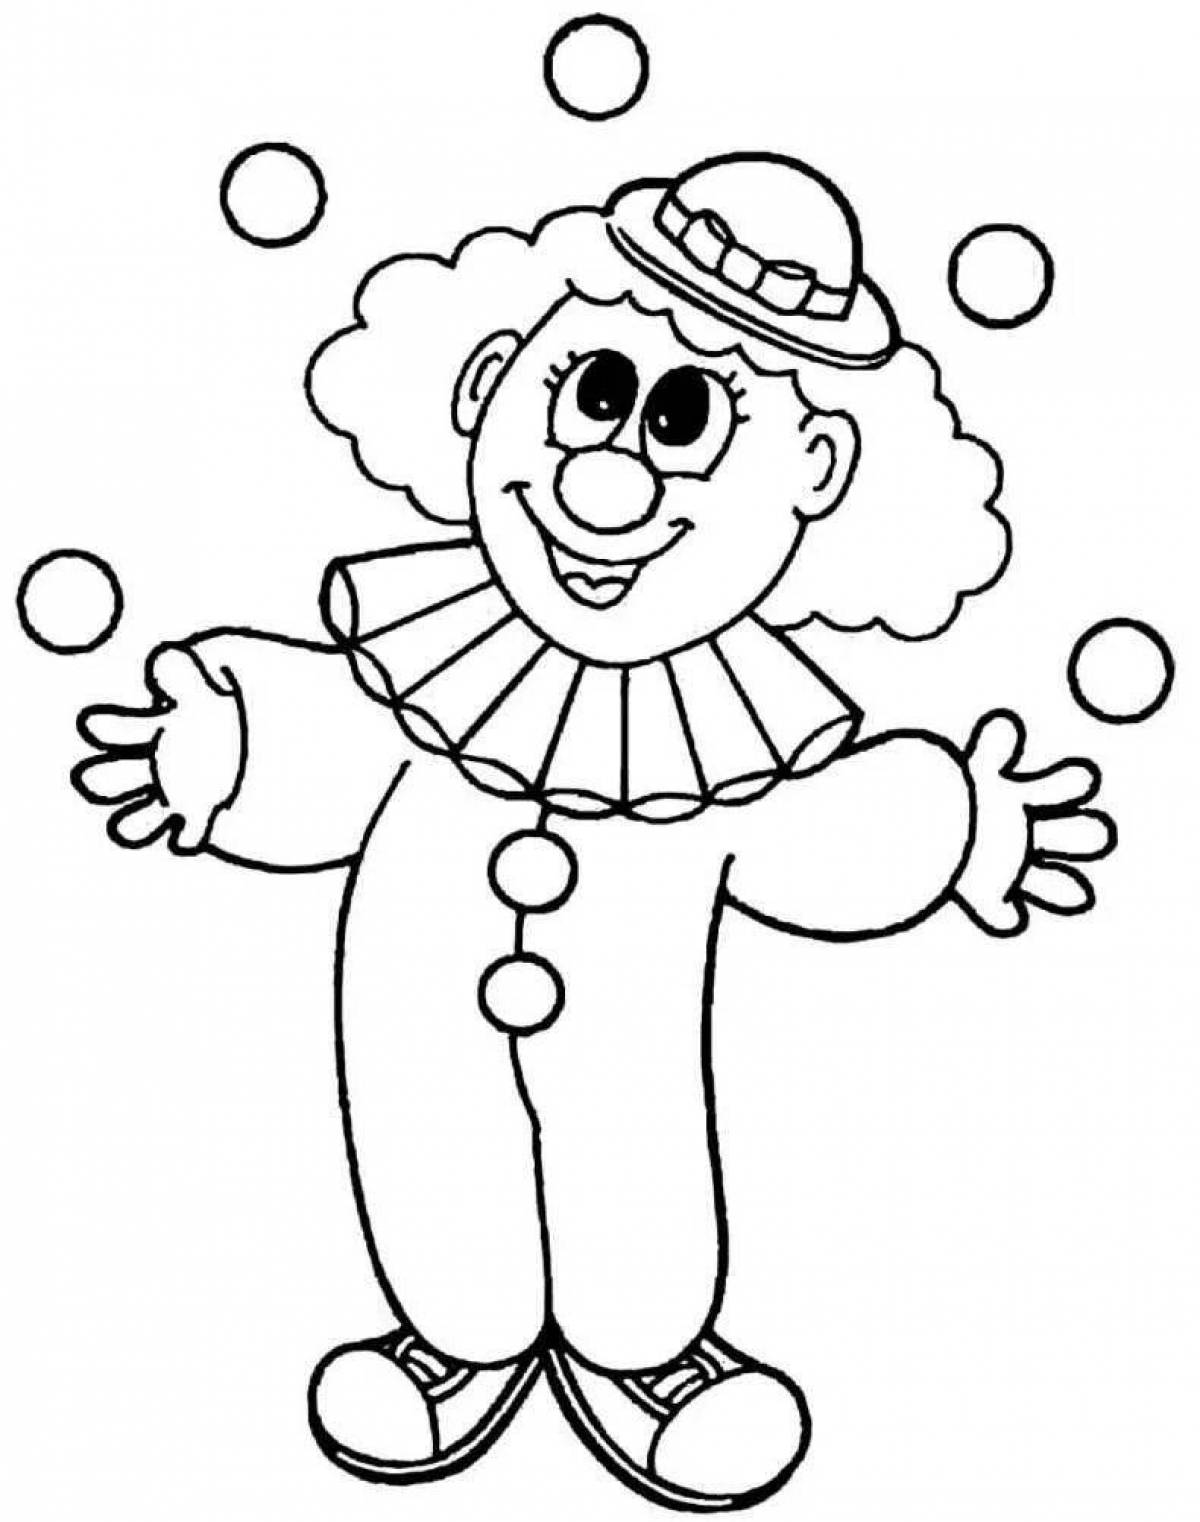 Sketch of a playful clown